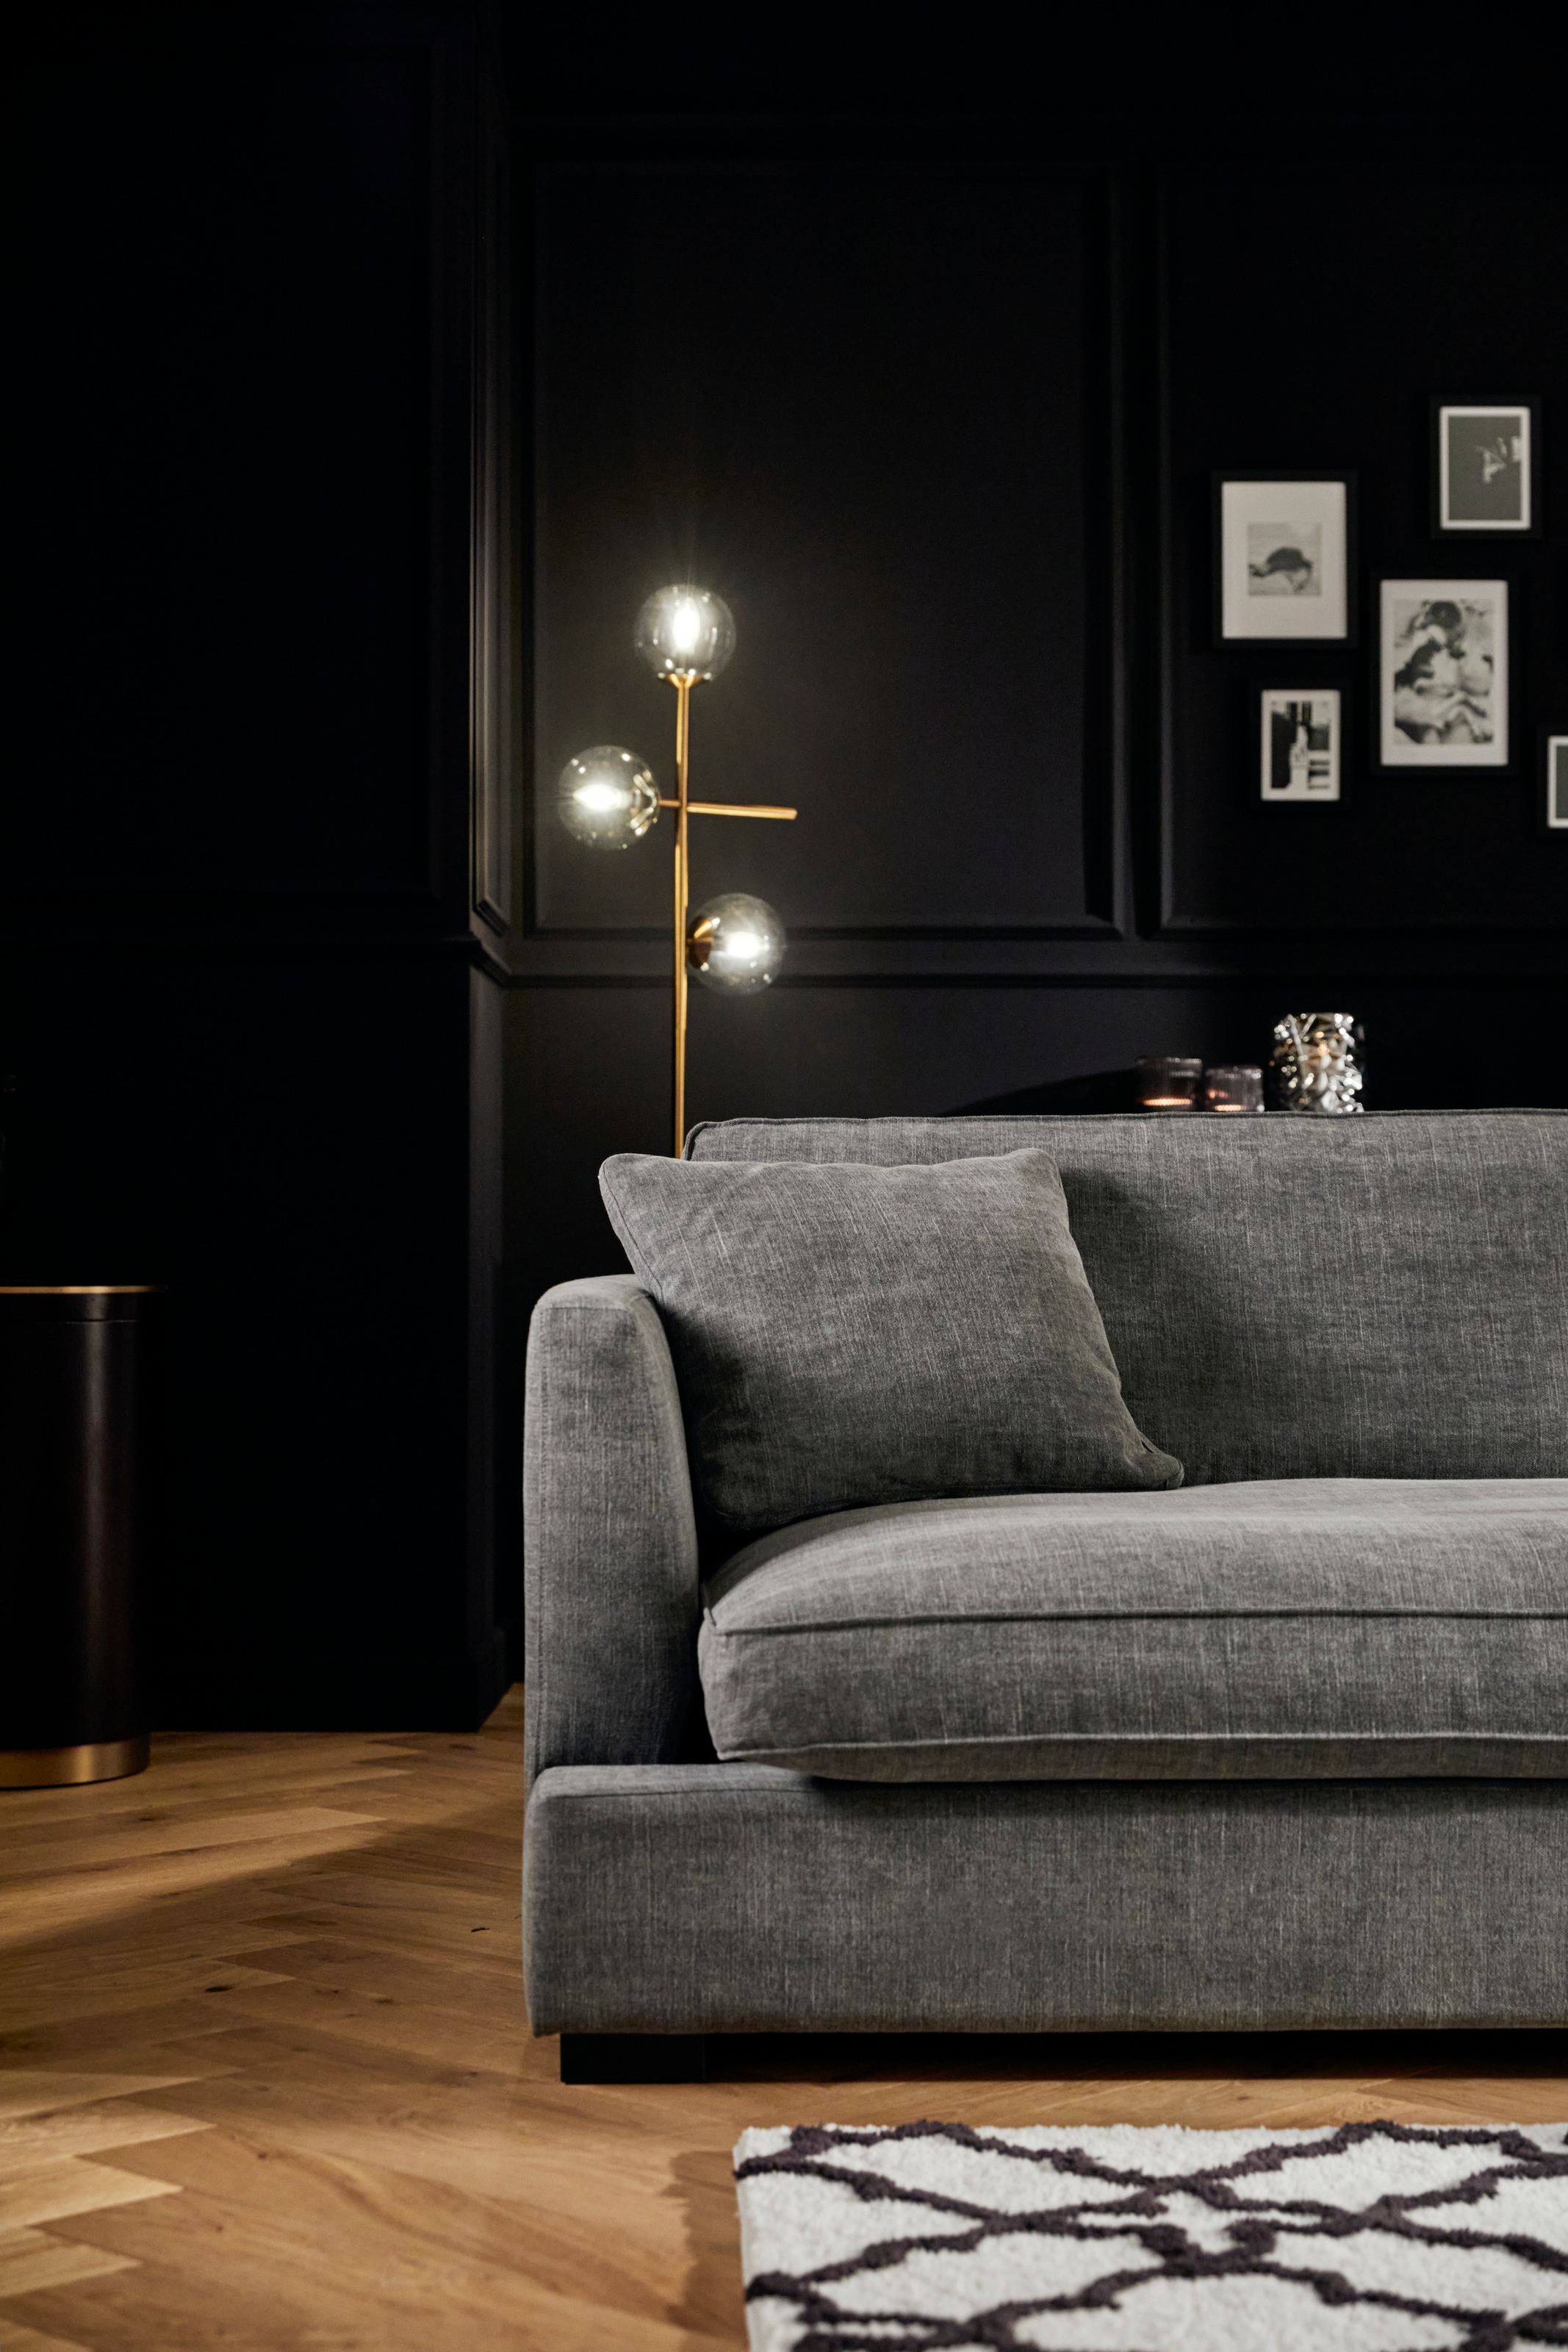 Guido Maria Kretschmer Home&Living Big-Sofa »Annera«, weicher Sitzkomfort, mit extra tiefen Sitzflächen, Füllung mit Federn